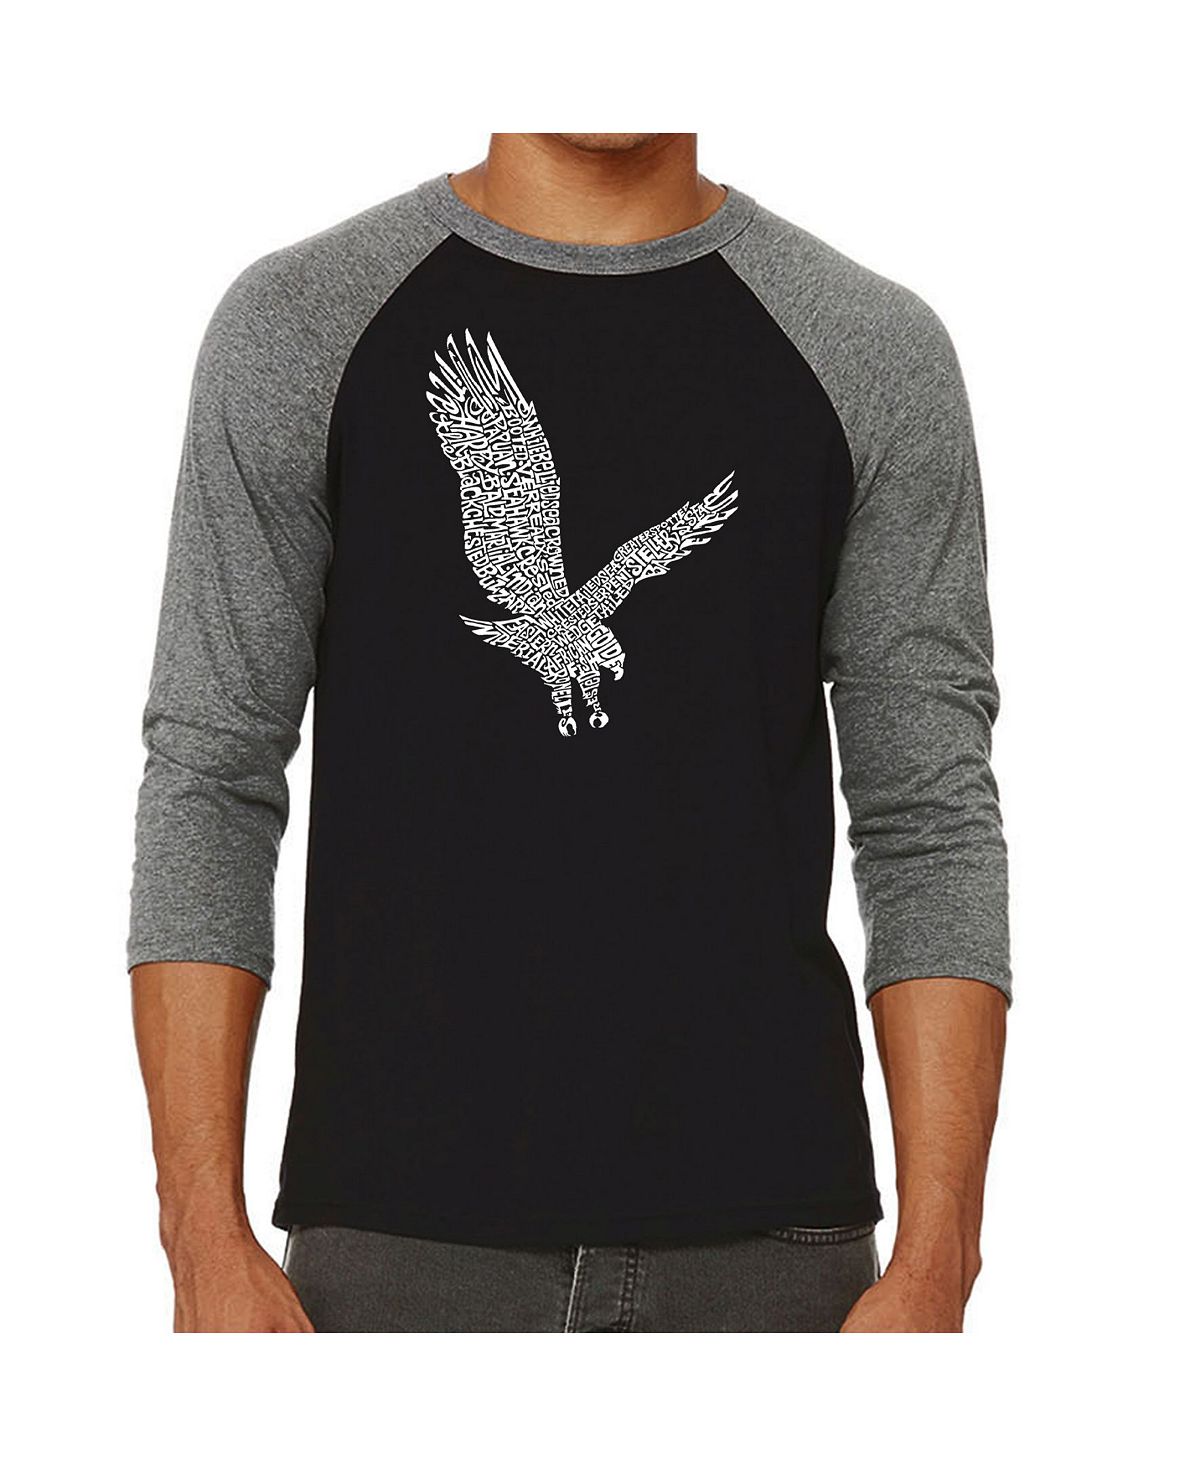 Мужская футболка с надписью eagle и регланом word art LA Pop Art, серый николай орлов